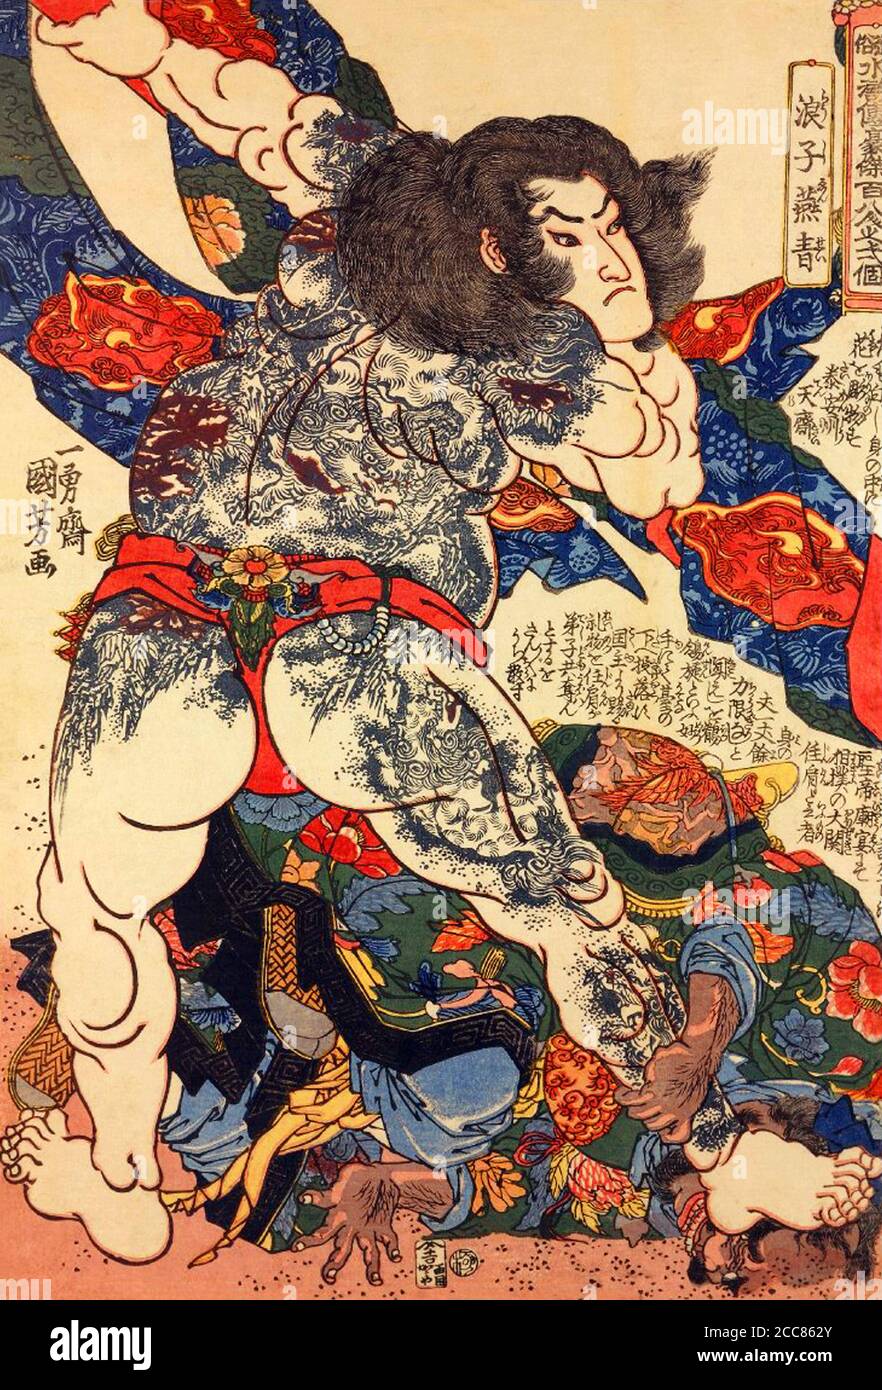 Giappone: Yan Qing o Roshi Ensei, uno dei "cento e otto Eroi del margine d'acqua", armati di un palo spesso coperto di stoffa, sconfigge un allievo rivale ad una partita di wrestling. È fortemente tatuato con motivi leoni e peony. Stampa di blocchi di legno di Utagawa Kuniyoshi (1797-1863), 1827-1830. Il margine d'acqua (conosciuto in cinese come Shuihu Zhuan, talvolta abbreviato in Shuihu, conosciuto come Suikoden in giapponese, così come gli fuorilegge della Marsh, vale delle Marais, tutti gli uomini sono fratelli, uomini delle Marais, O le paludi del Monte Liang in inglese, è un romanzo del XIV secolo e uno dei quattro grandi C. Foto Stock